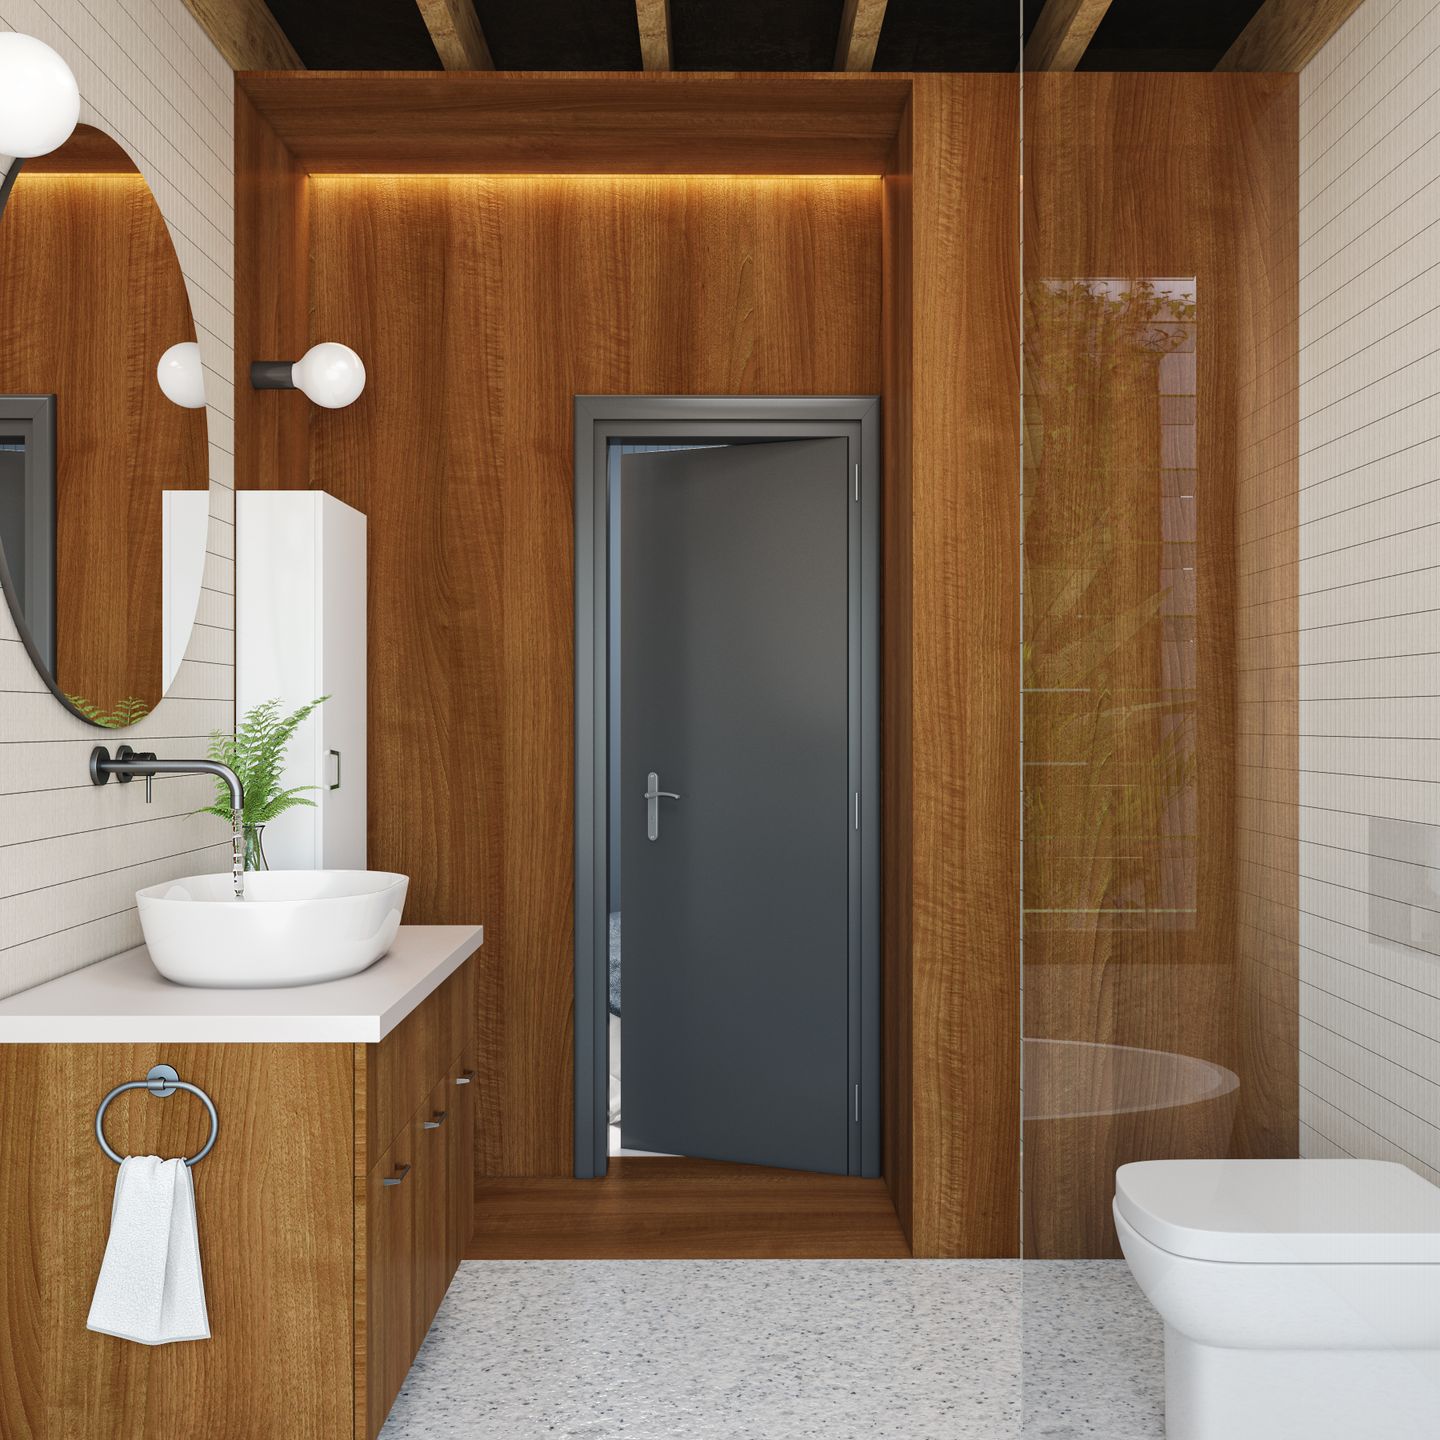 Contemporary Bathroom Design - Livspace